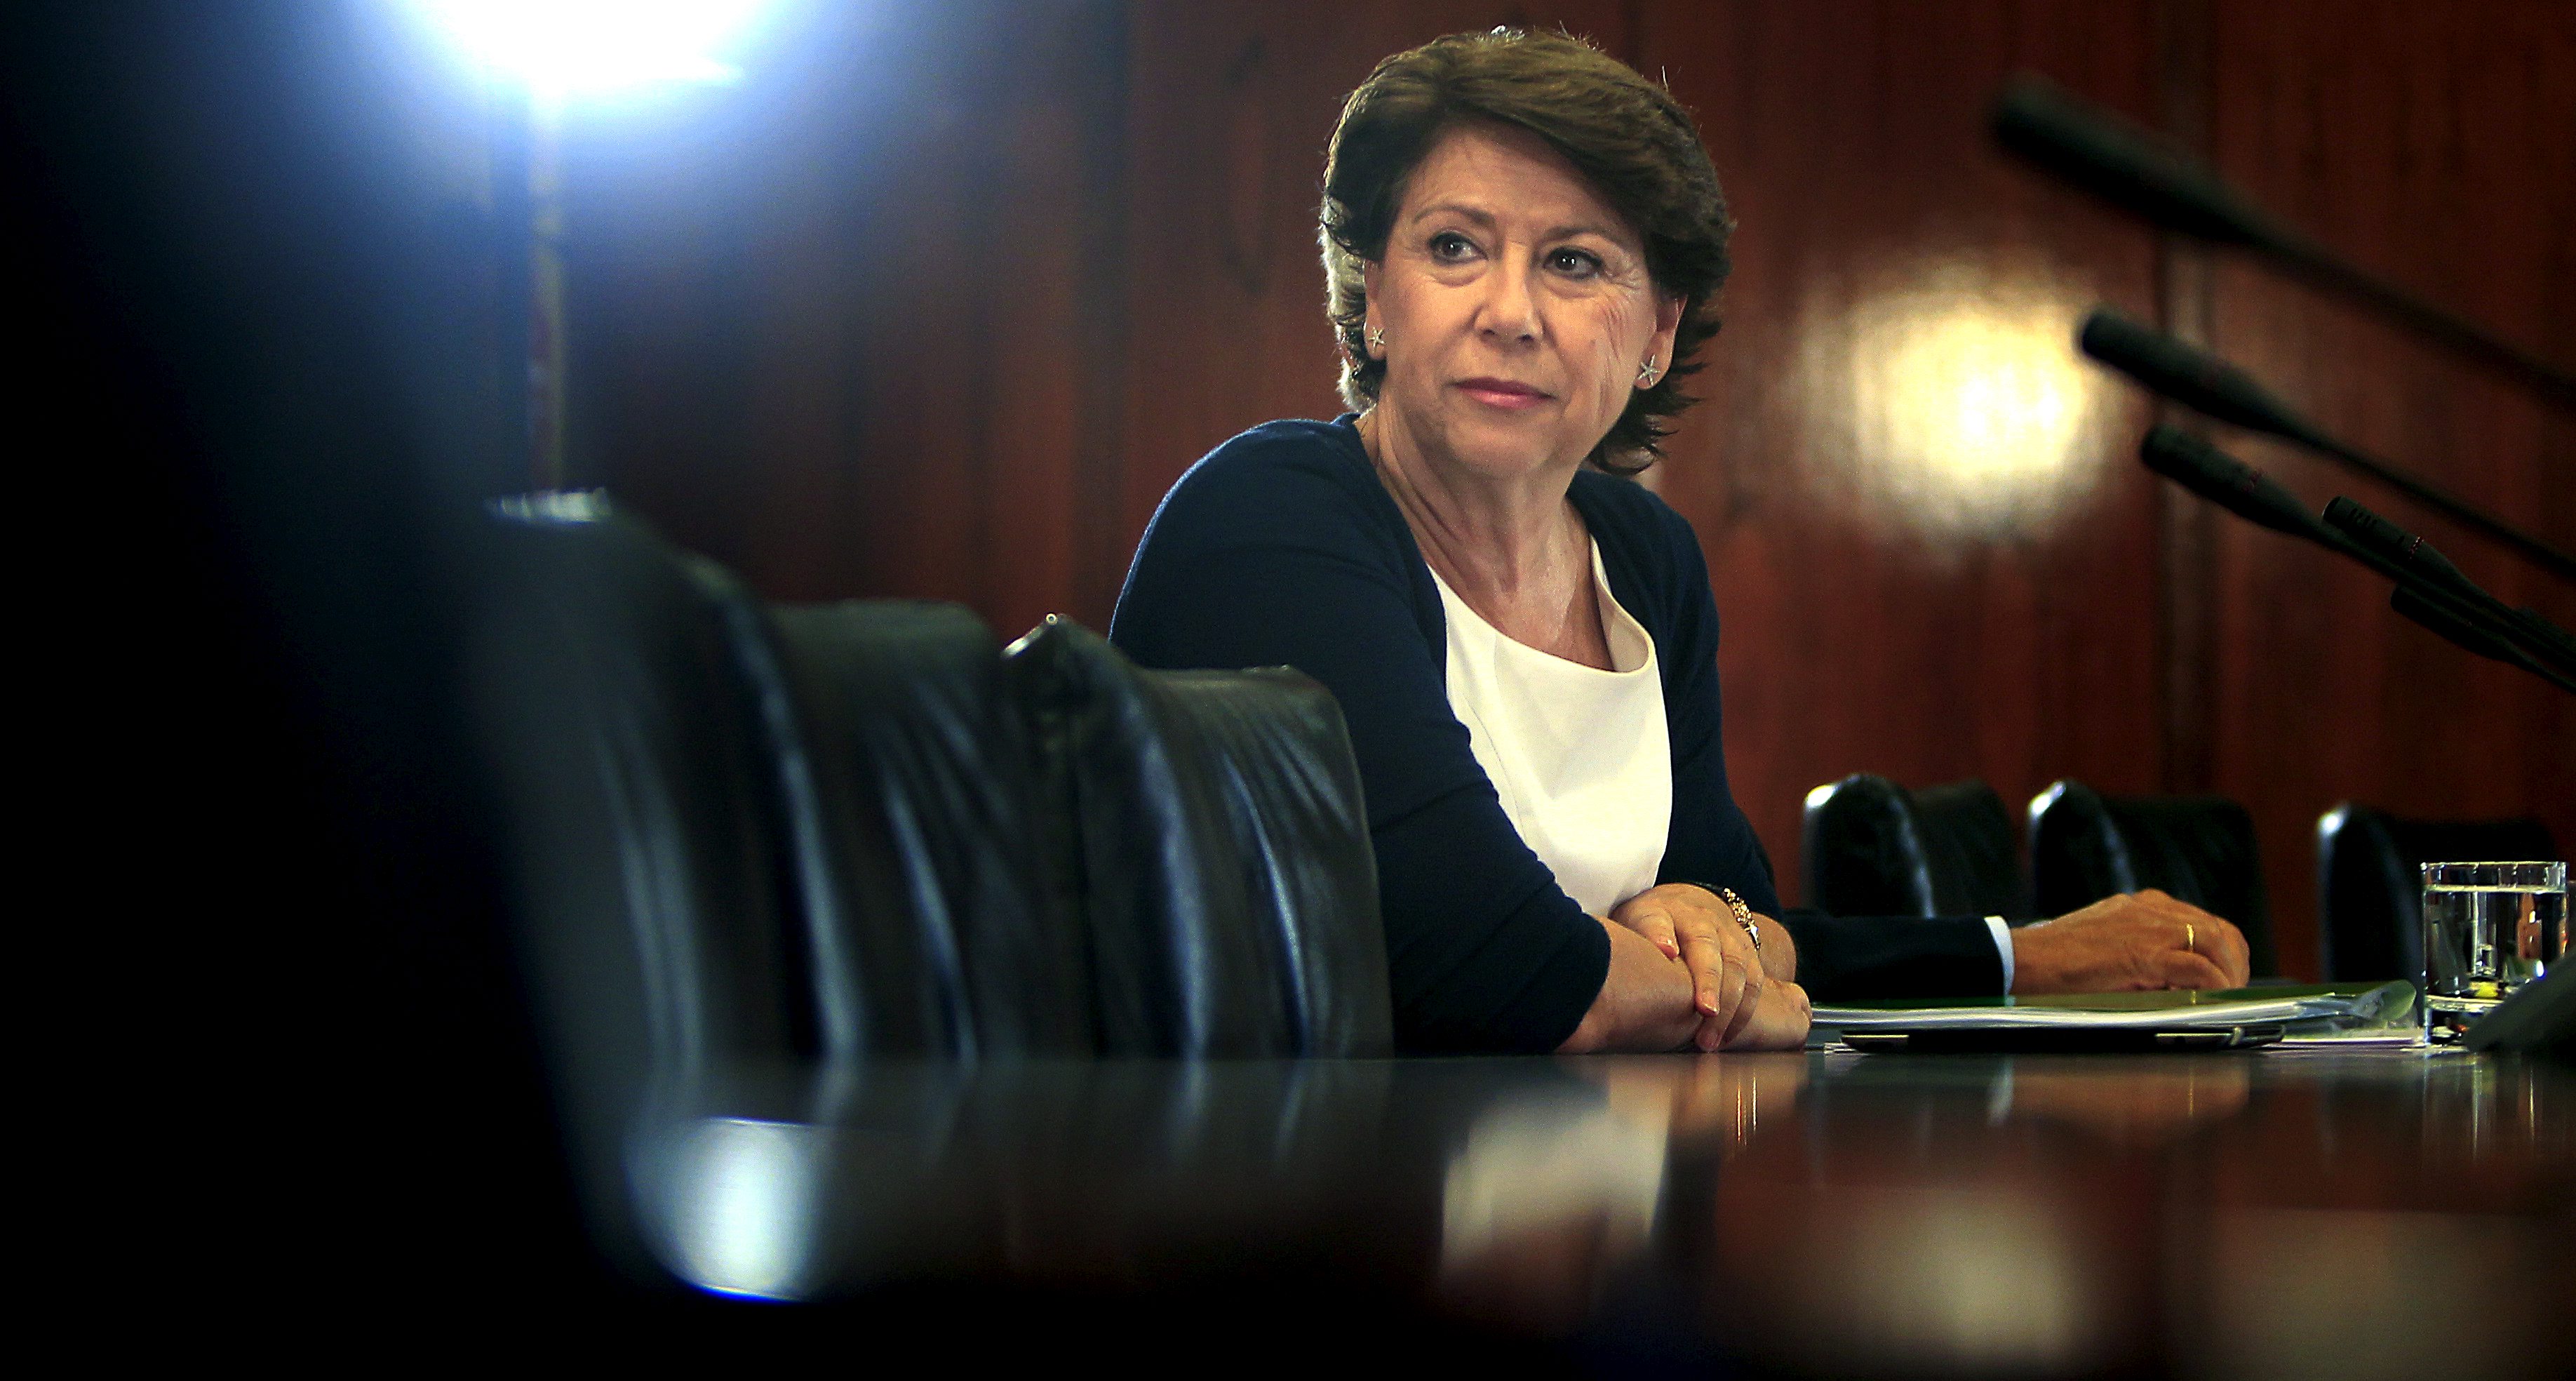 La ex ministra de Fomento socialista Magdalena Álvarez, imputada por la juez en el caso de los ERE